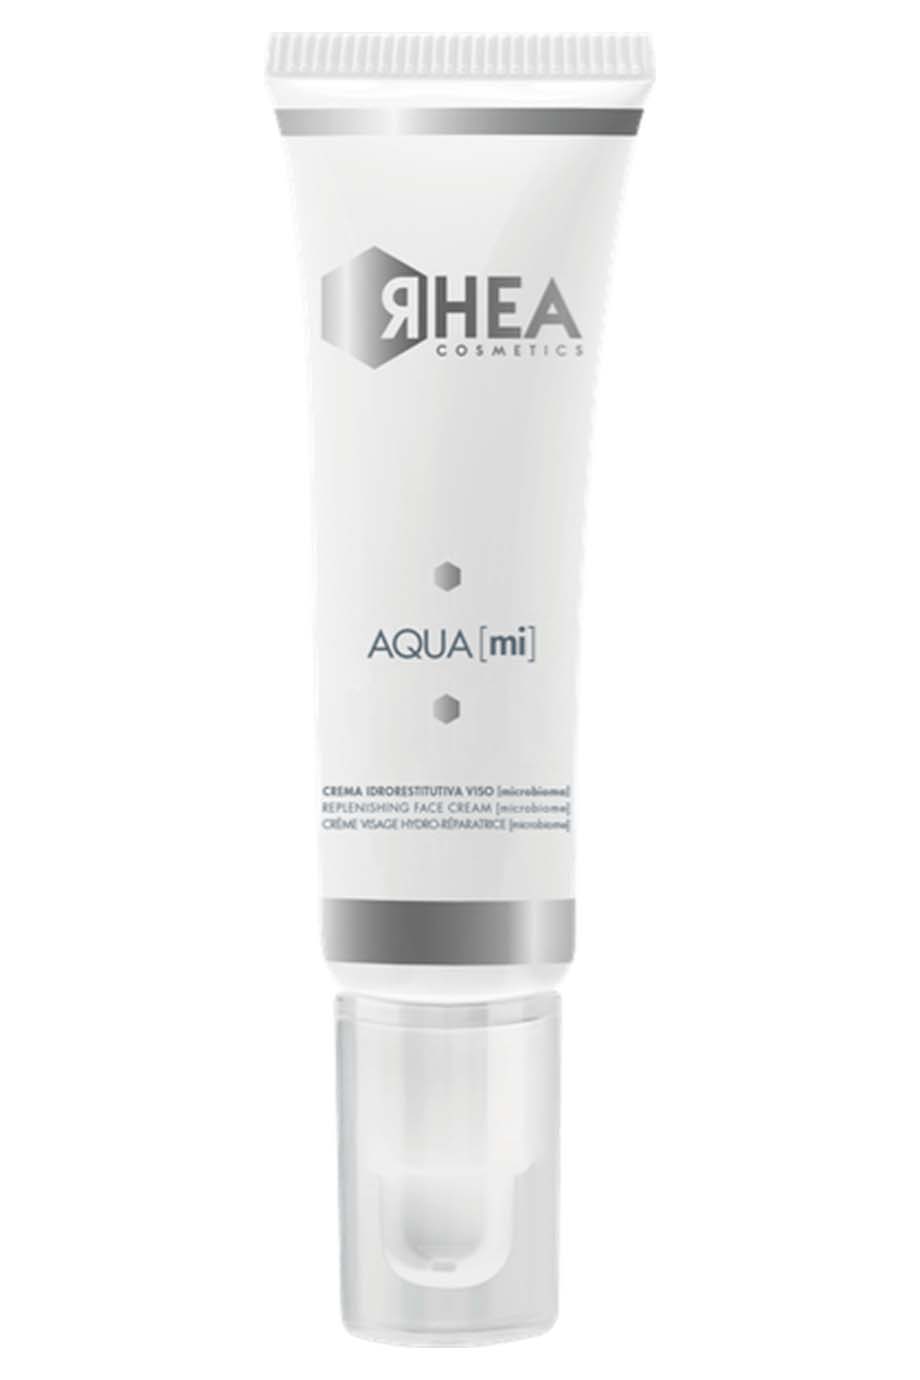 Крем-Микробиом с глубоким увлажняющим действием Aqua [mi] ЯHEA Cosmetics 50 мл — фото №1